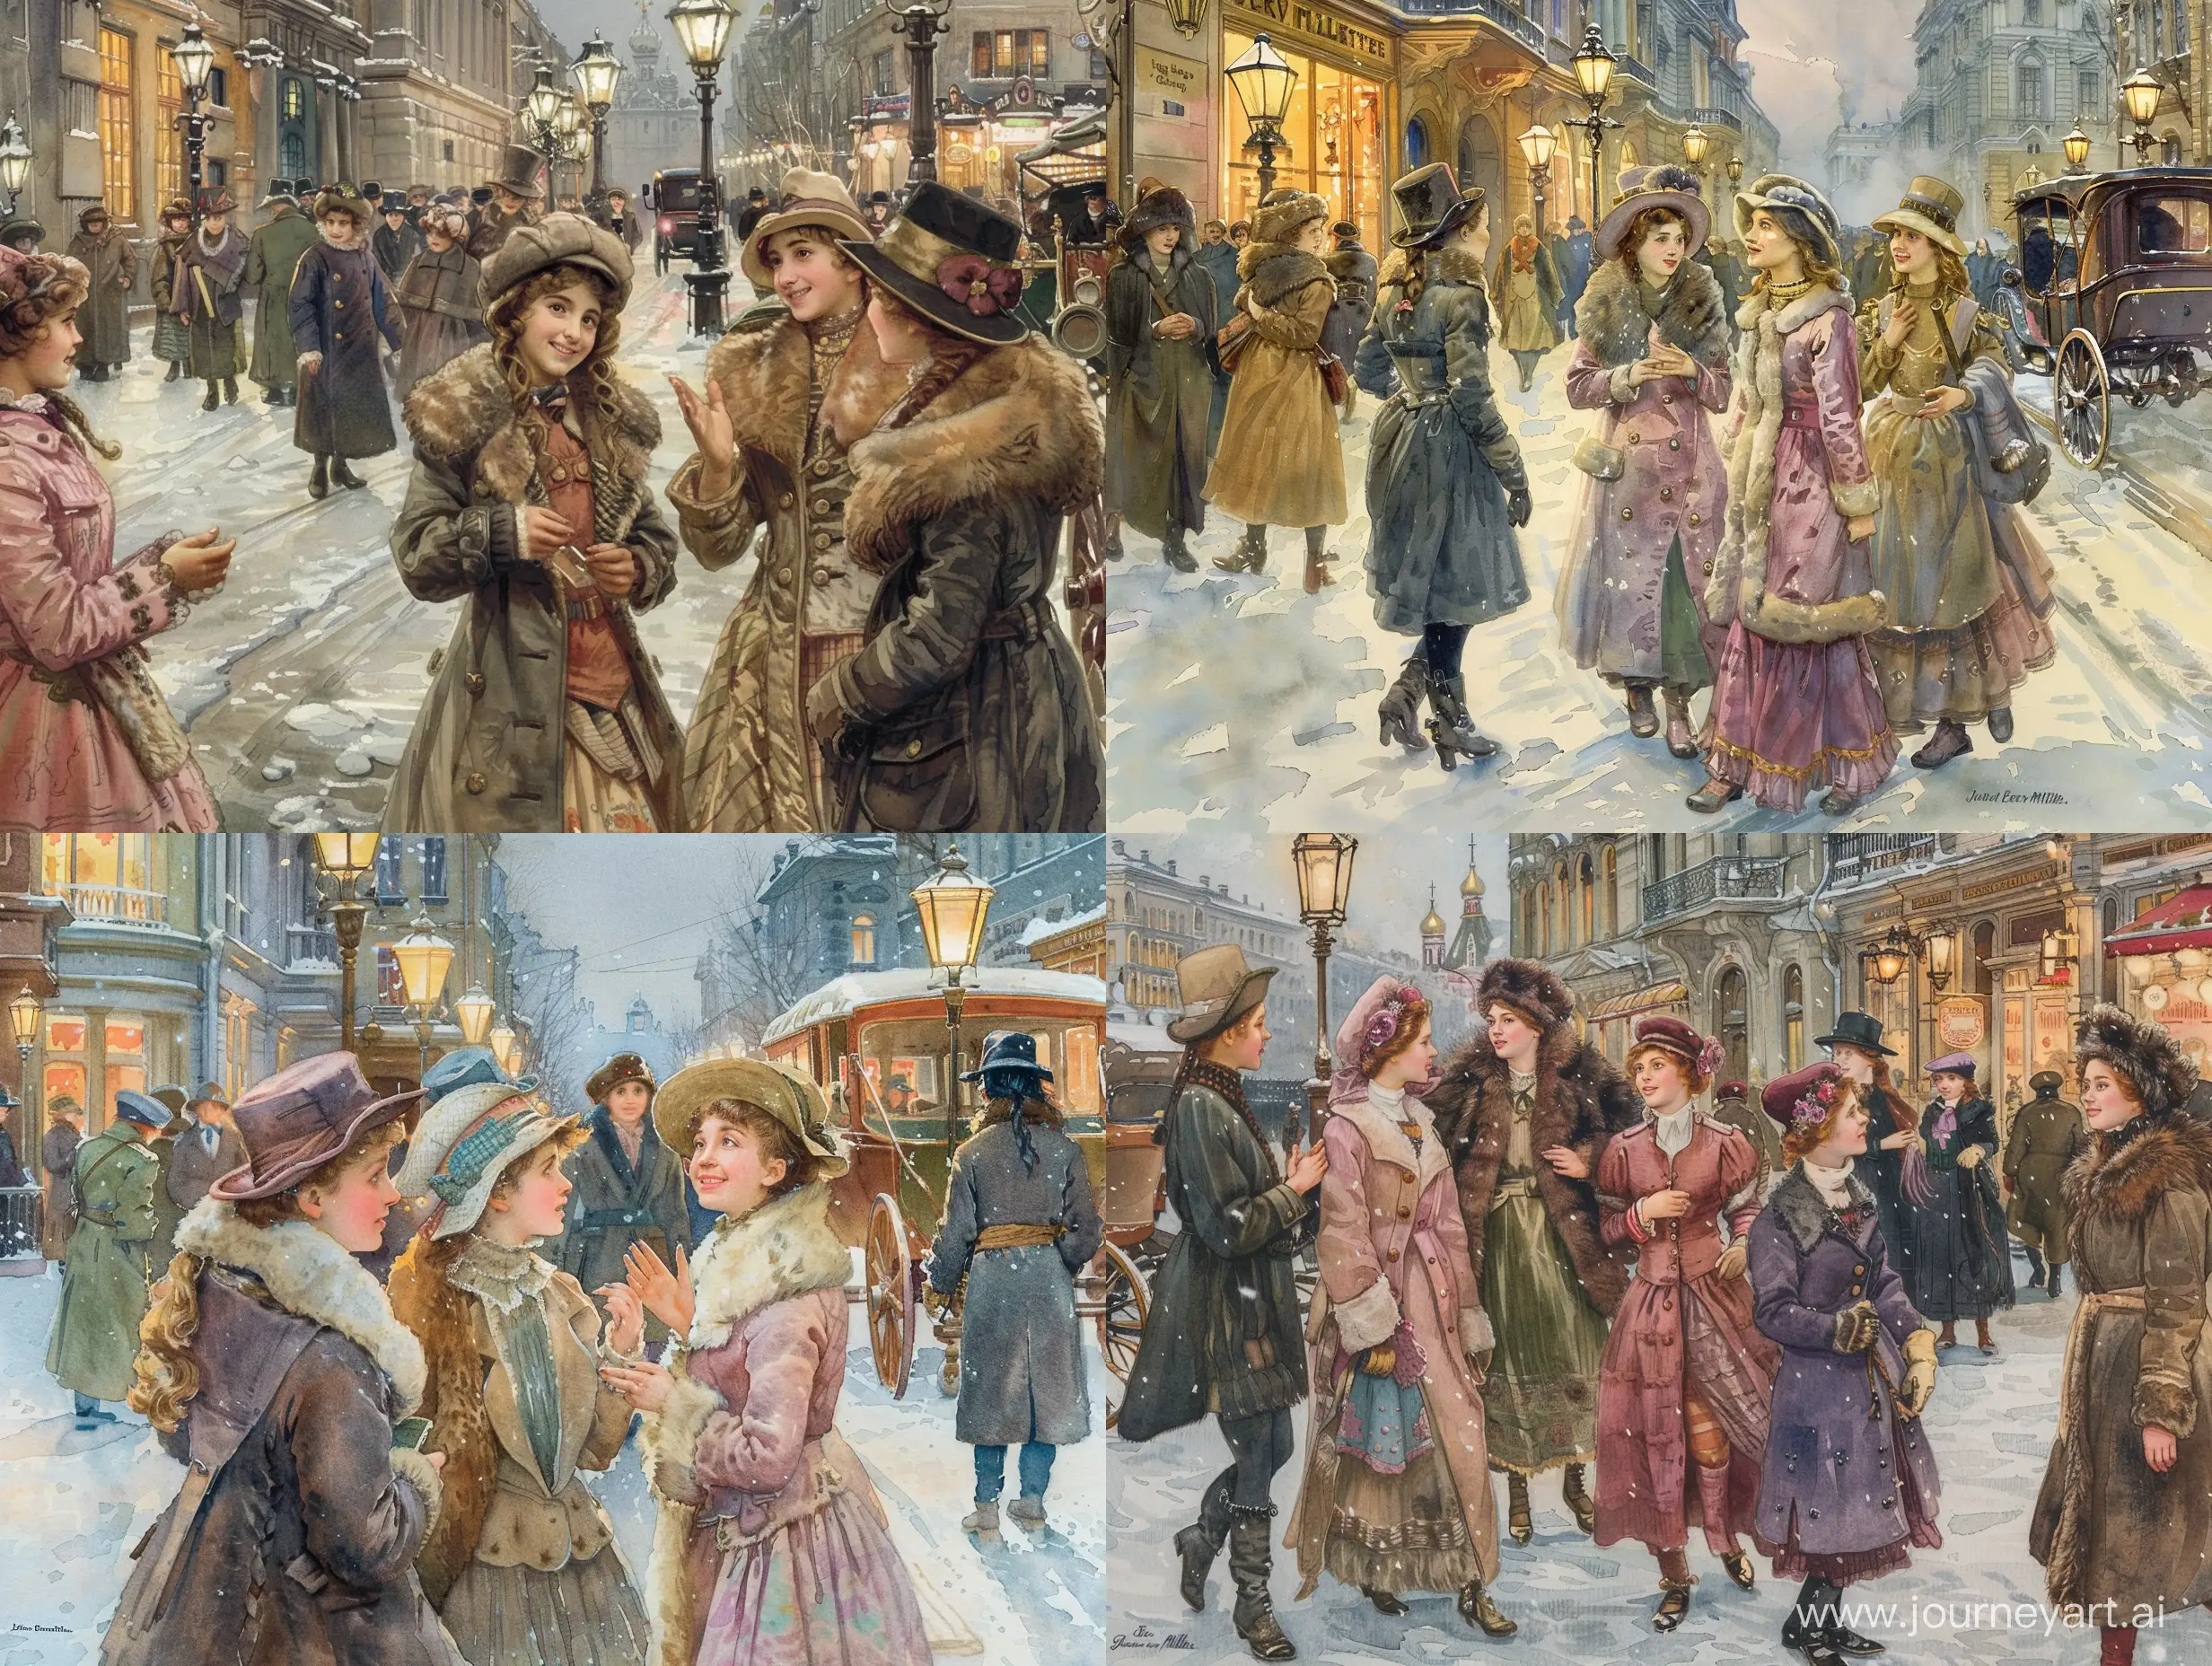 Группа молодых модных девушек жительниц Петербурга гуляют по зимней улице города. На улице Санкт-Петербурга с фонарями, прохожими, магазинами, каретами и извозчиками. Девушки общаются друг с другом и им весело. При общении они смотрят друг другу в лицо. Девушки одеты тепло и красиво по моде 1910 года. На них тёплые шапочки и шубки с мехом или пальто, всё сочетается по цвету и стилю. Все прохожие также одеты в стиле начала 20 века. Акварель в стиле и цвете John Everett Millais.  Действие происходит на улице Санкт-Петербурга зима 1910 года.